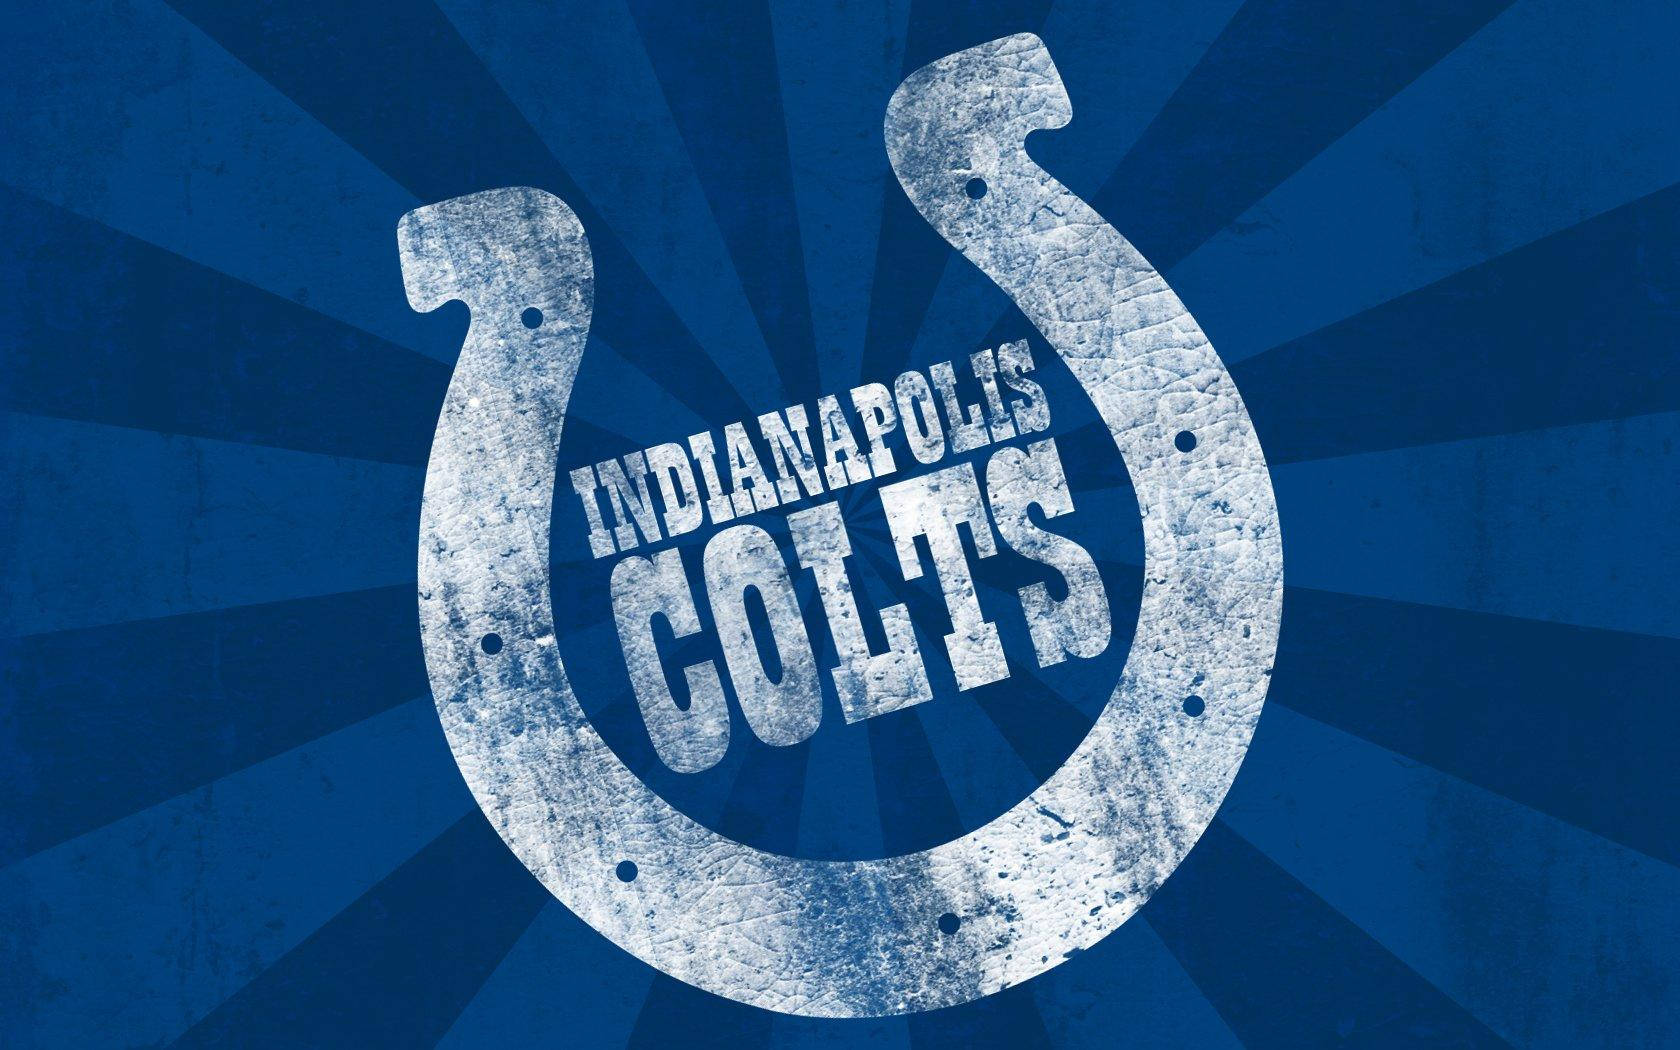 Wallpaperblått Och Vitt, Indianapolis Colts-bakgrundsbild. Wallpaper